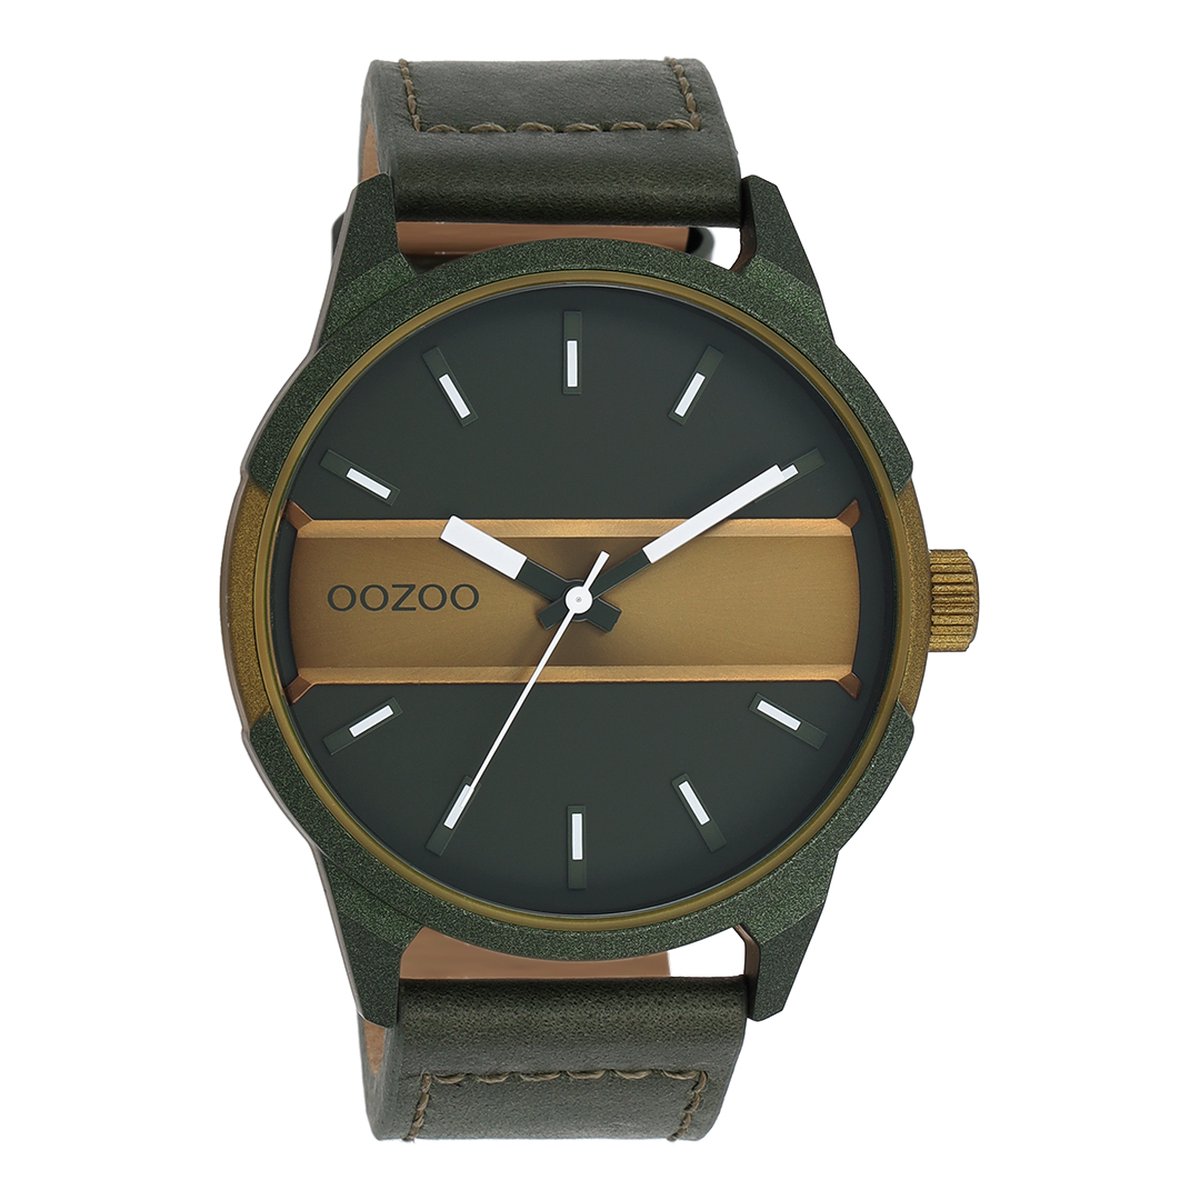 OOZOO Timepieces - Bos-olijf groene OOZOO horloge met bos groene leren band - C11233